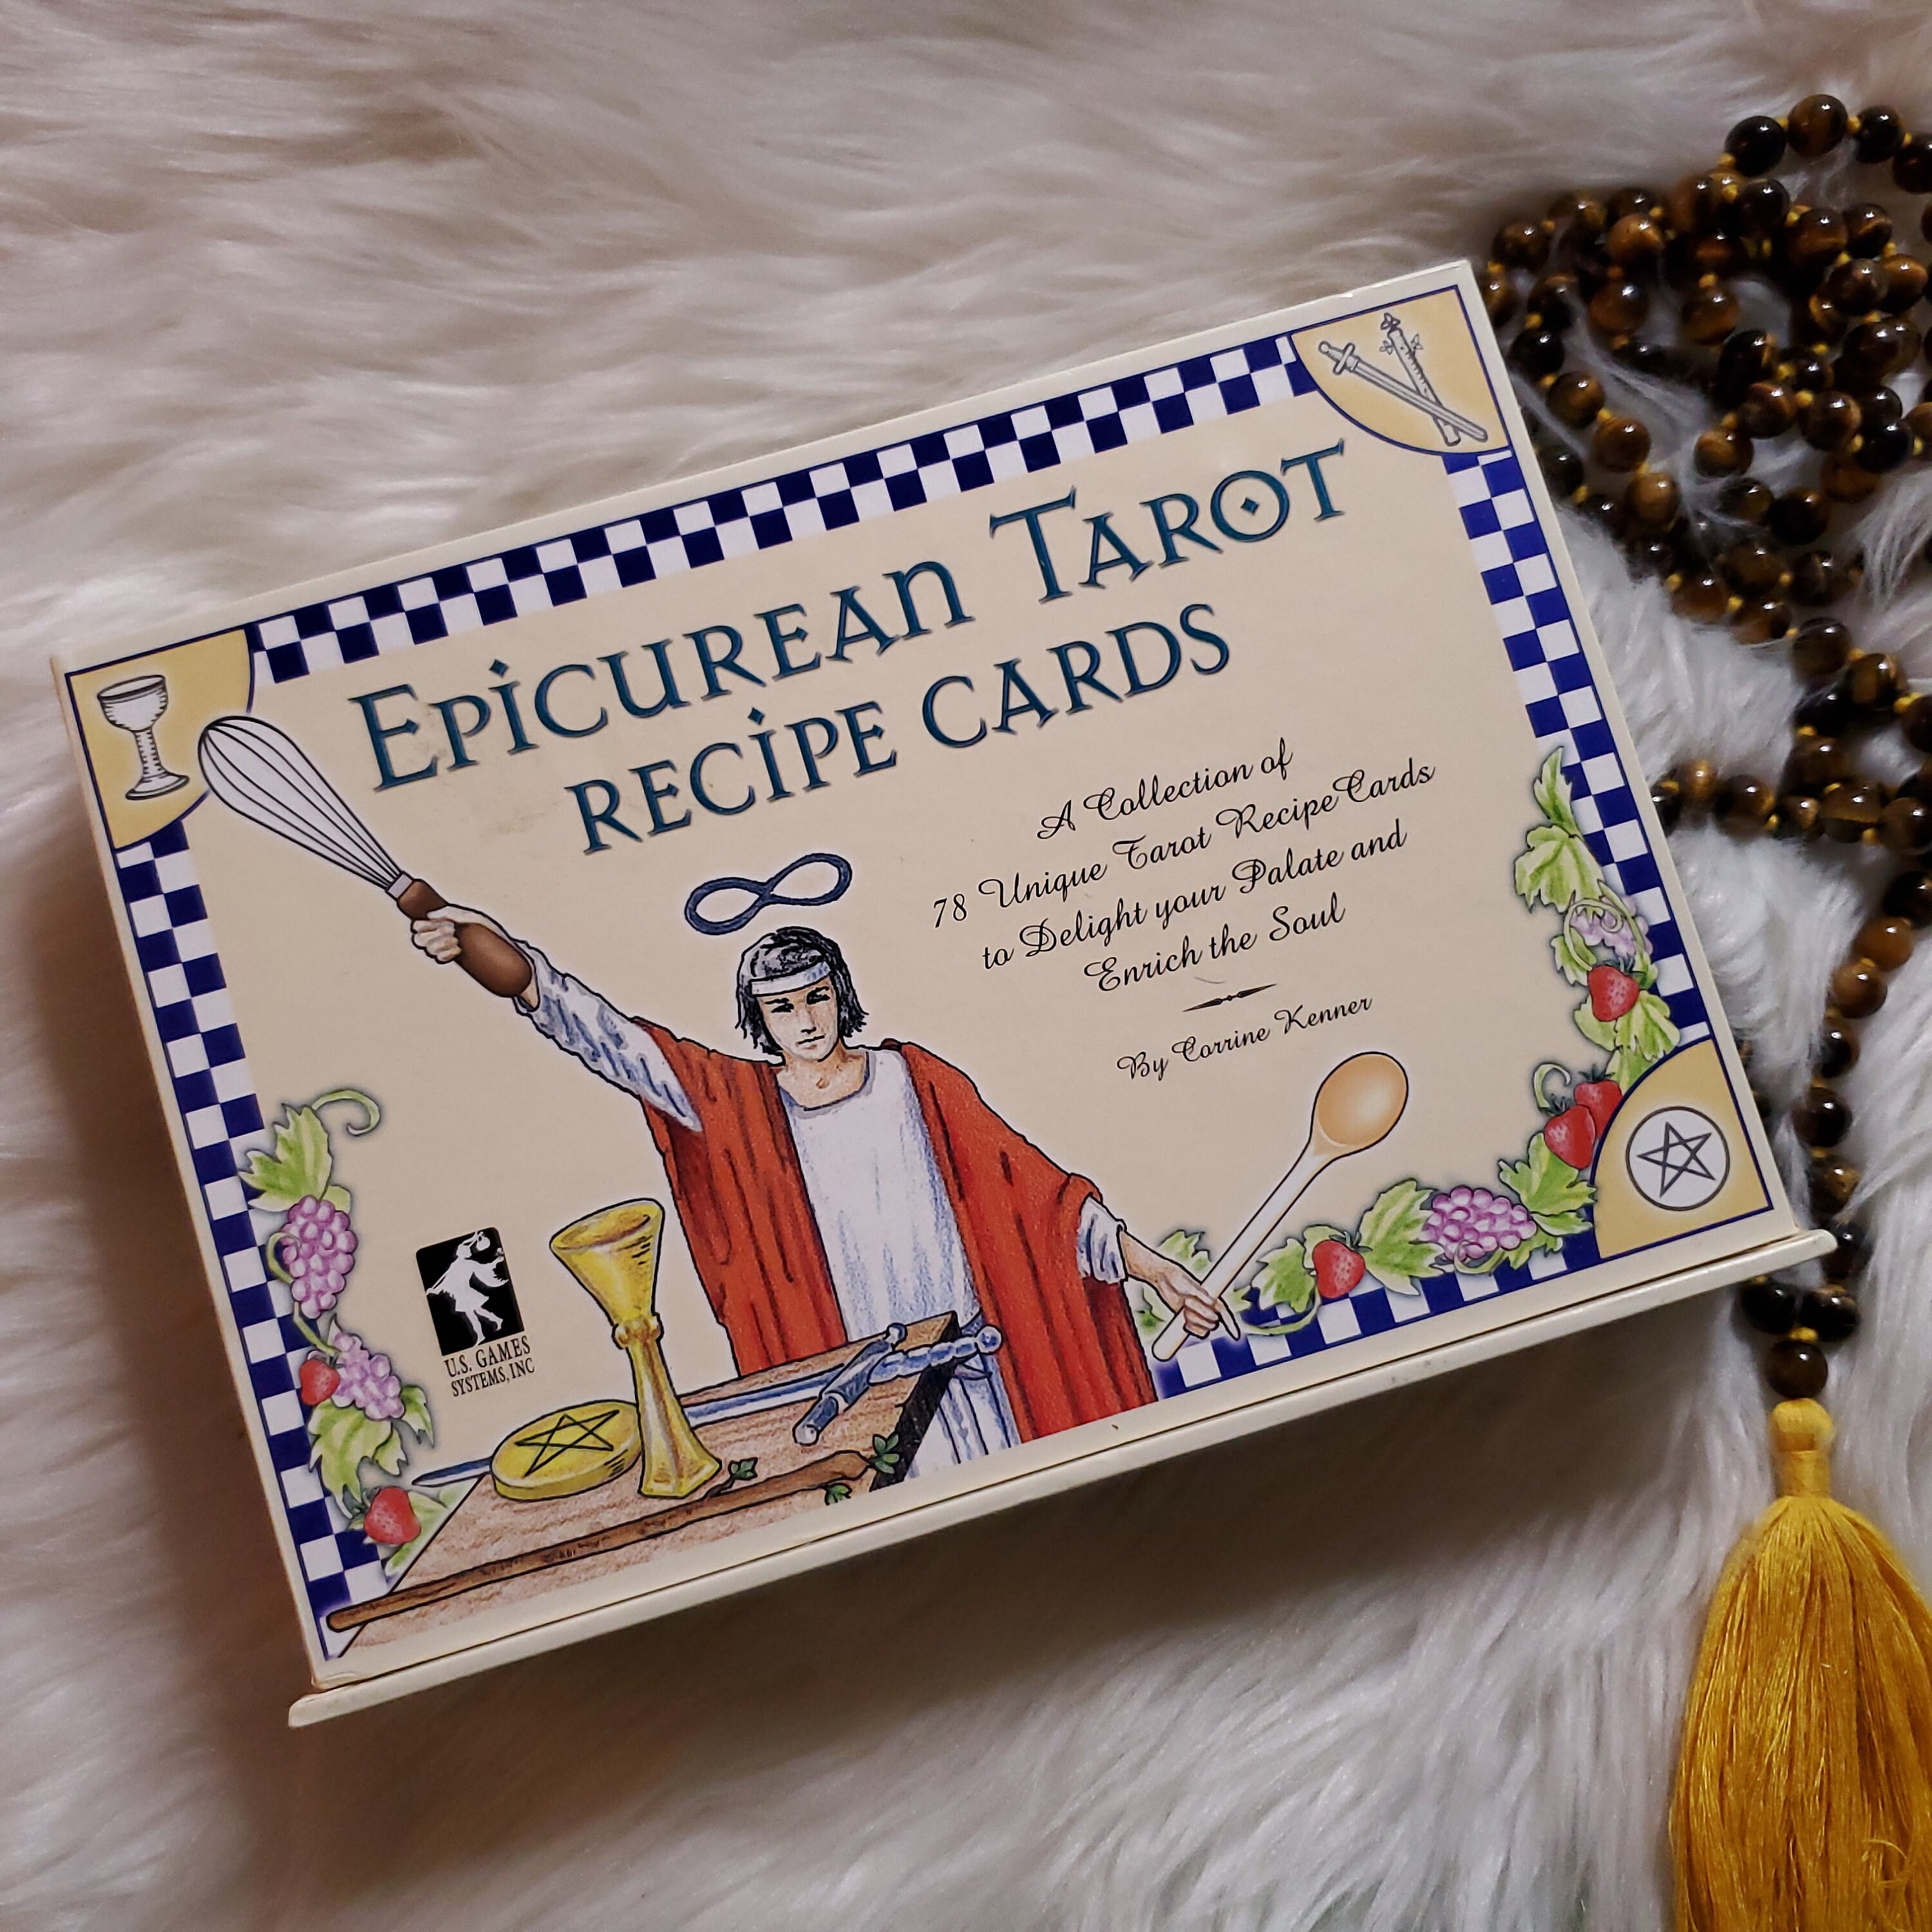 14280円 魅力的な Epicurean Tarot Recipe Cards